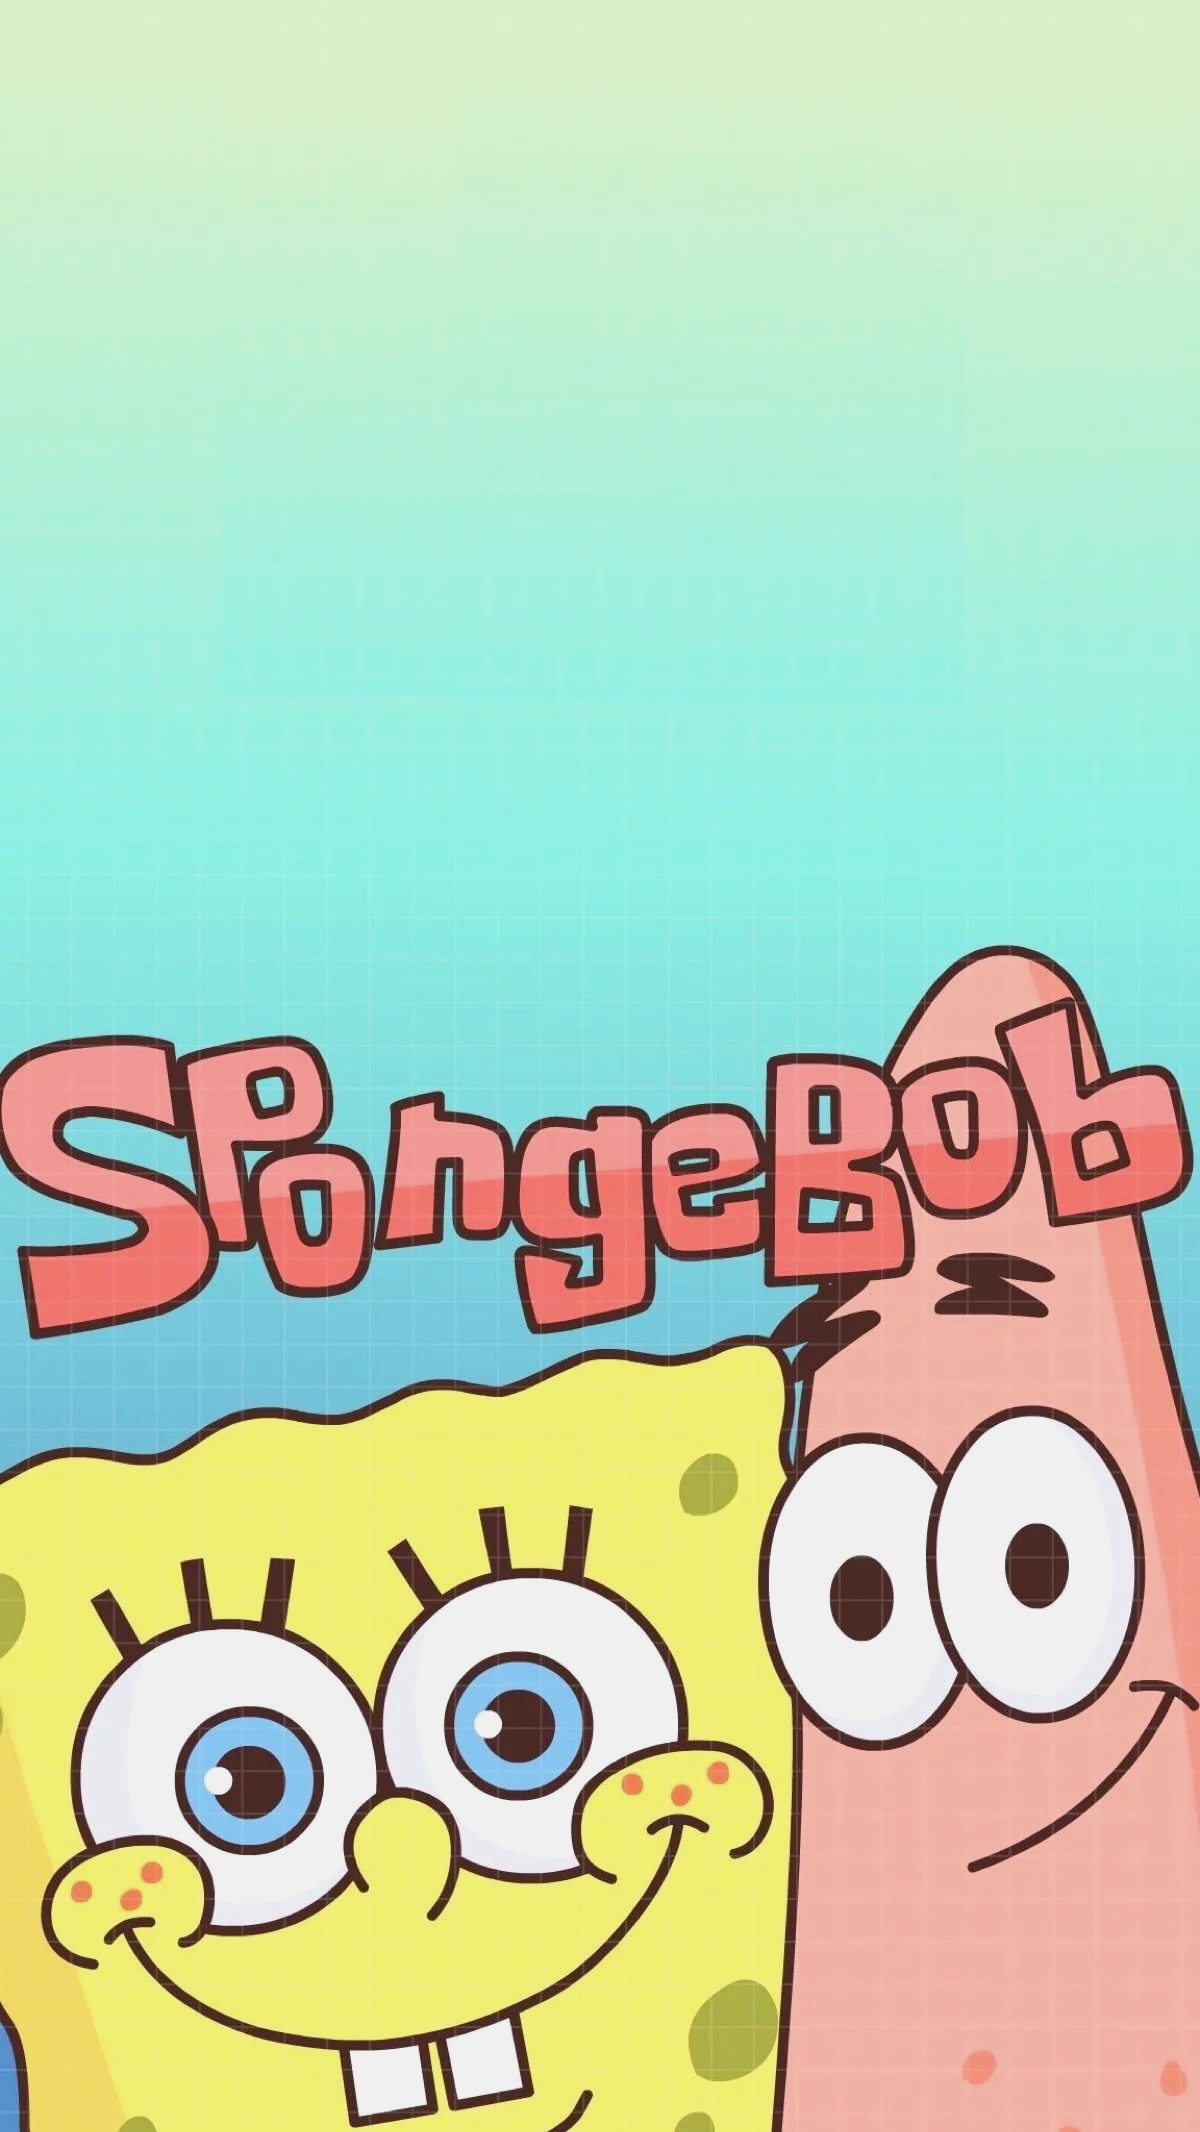 carta da parati spongebob,cartone animato,testo,font,illustrazione,contento